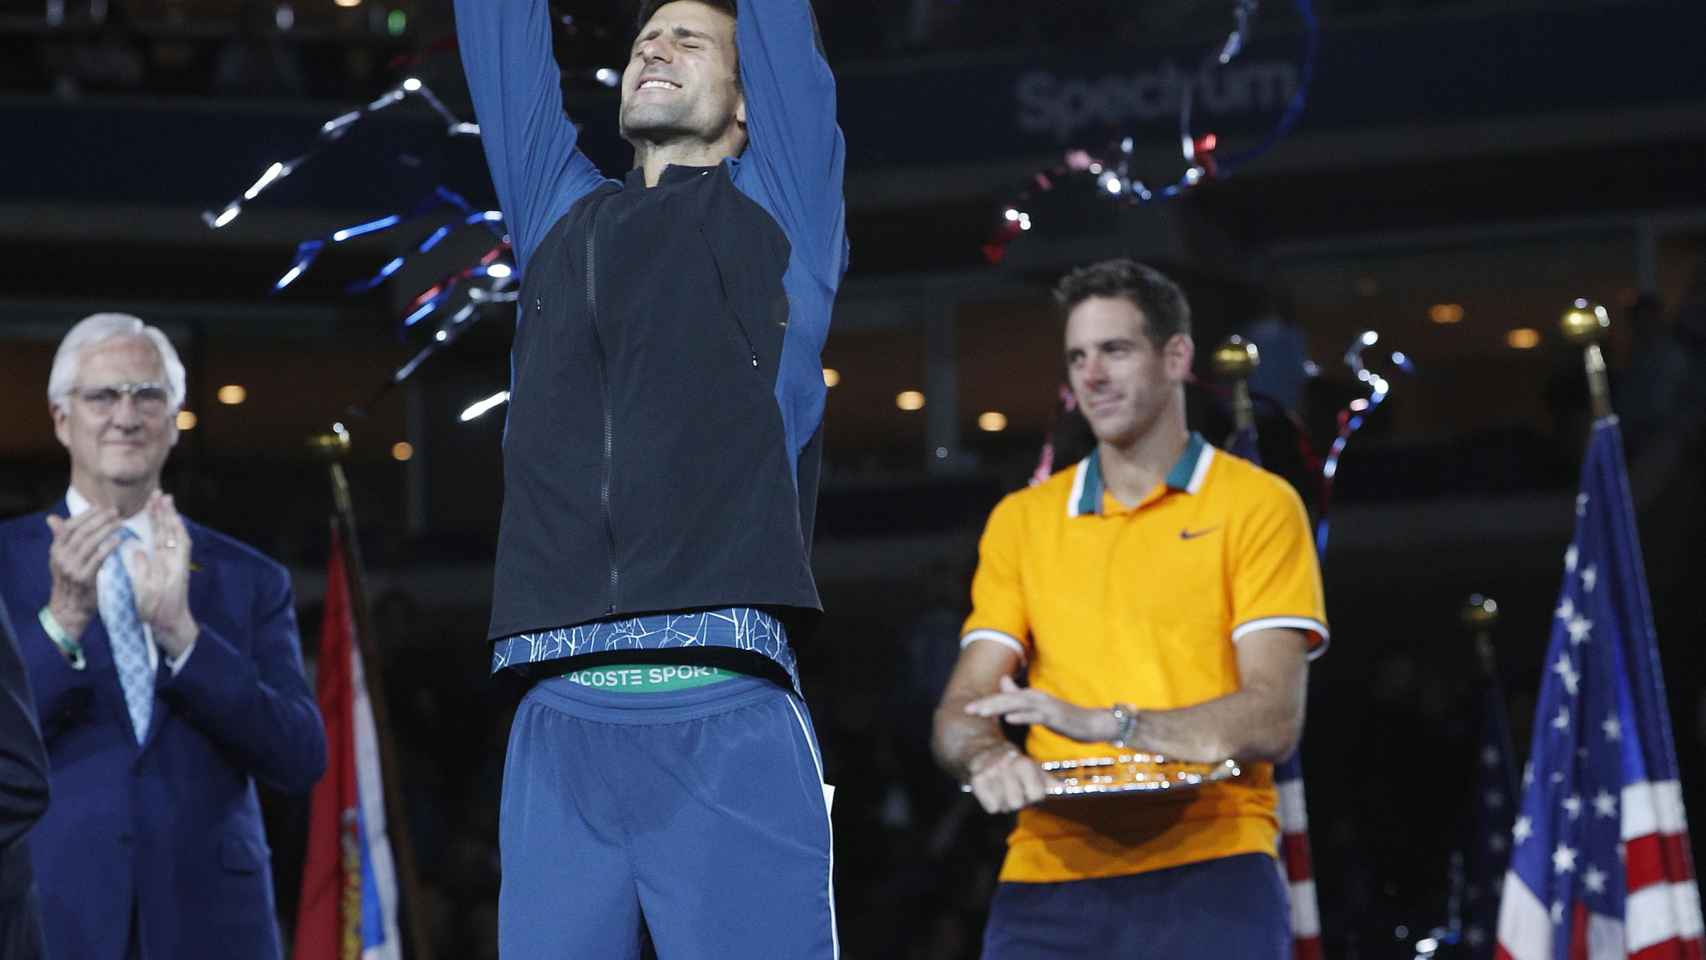 Djokovic, tras ganar el US Open